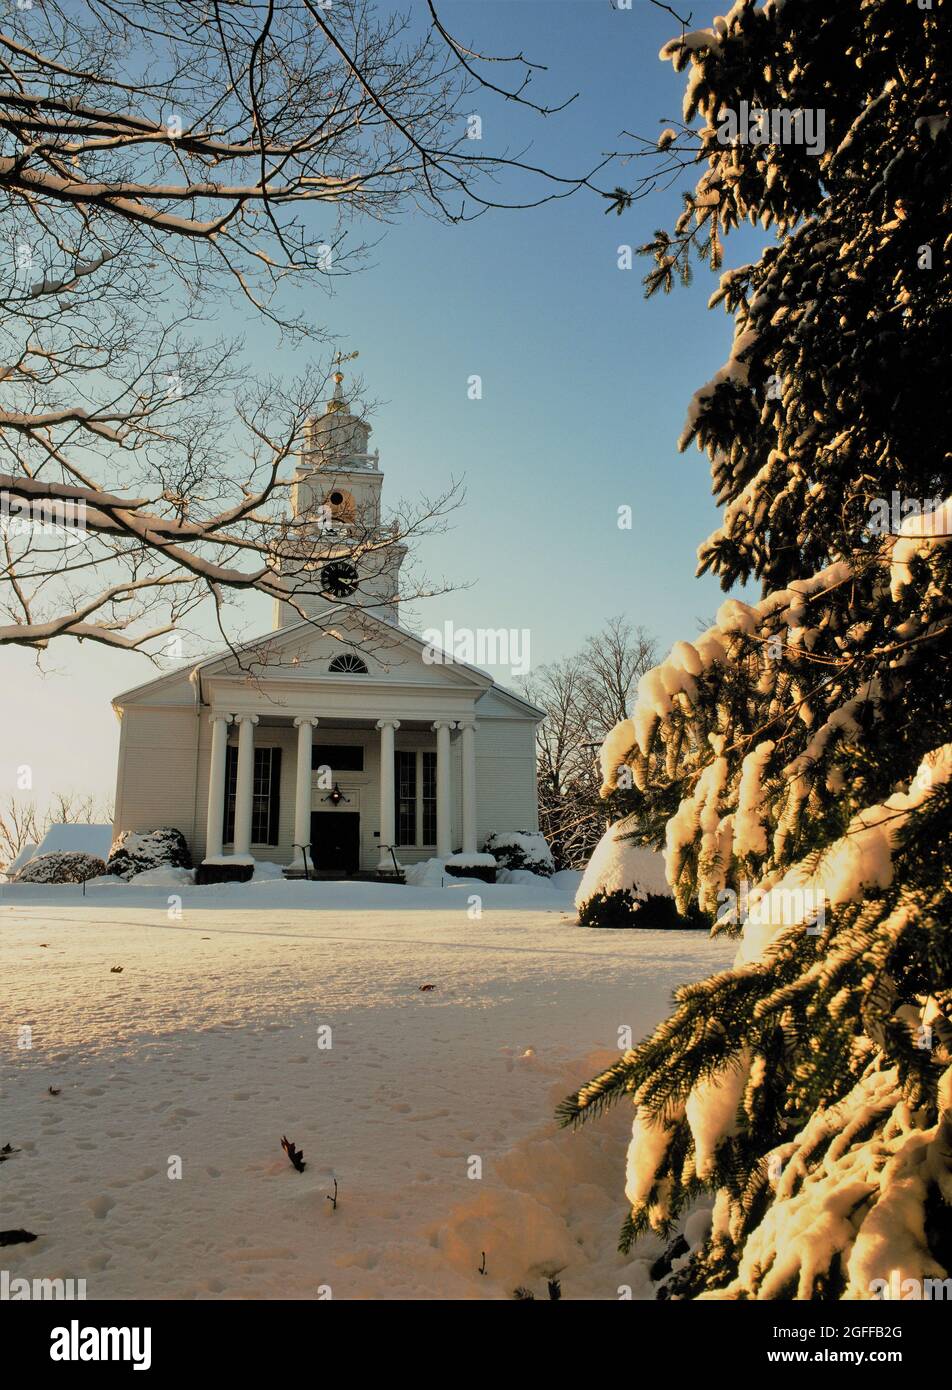 Église de la Nouvelle-Angleterre dans la neige d'hiver Banque D'Images